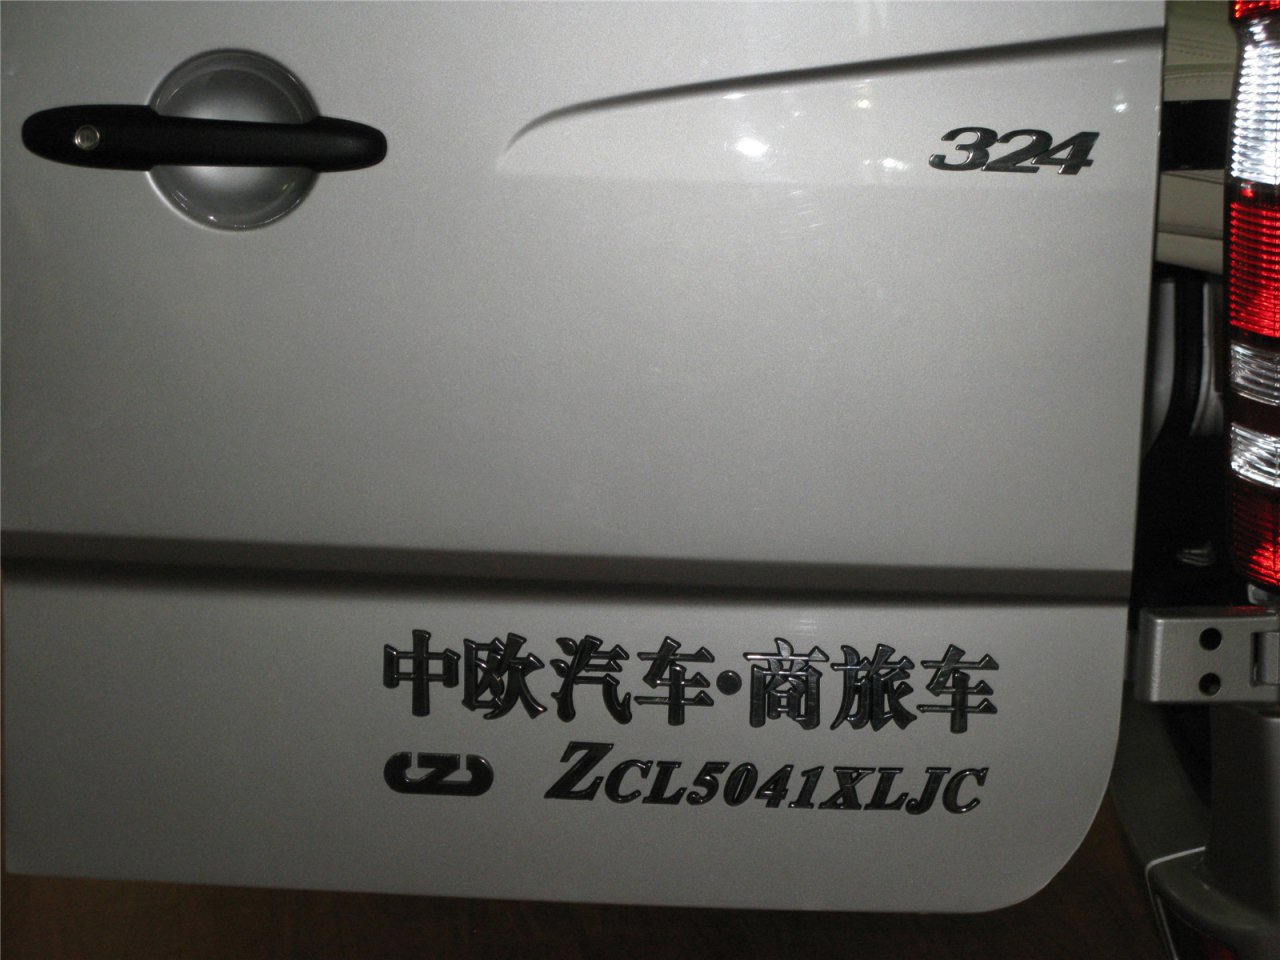 2013年第三届中国重庆汽车博览会展览车型：奔驰房车尊铂